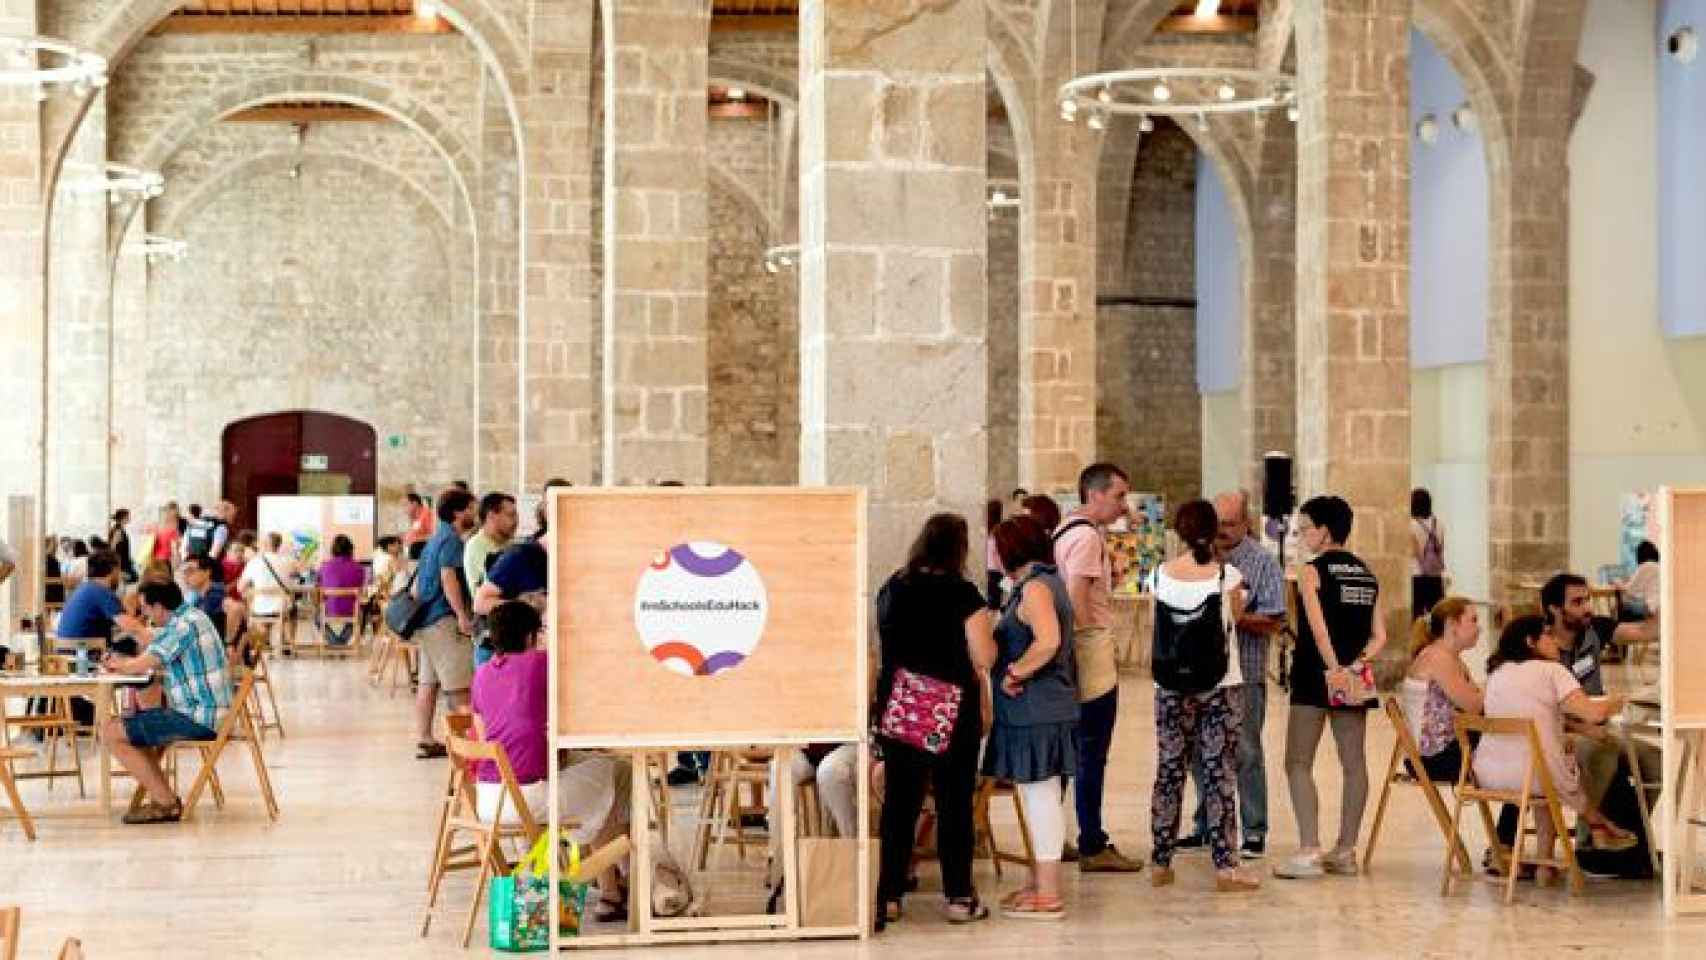 El 'hackatron' de la MSchools, uno de los últimos grandes eventos impulsados desde la Mobile World Capital de Barcelona, que muestra su 'hartazgo' al convertirse en escenario de pugna política en Cataluña / MWC